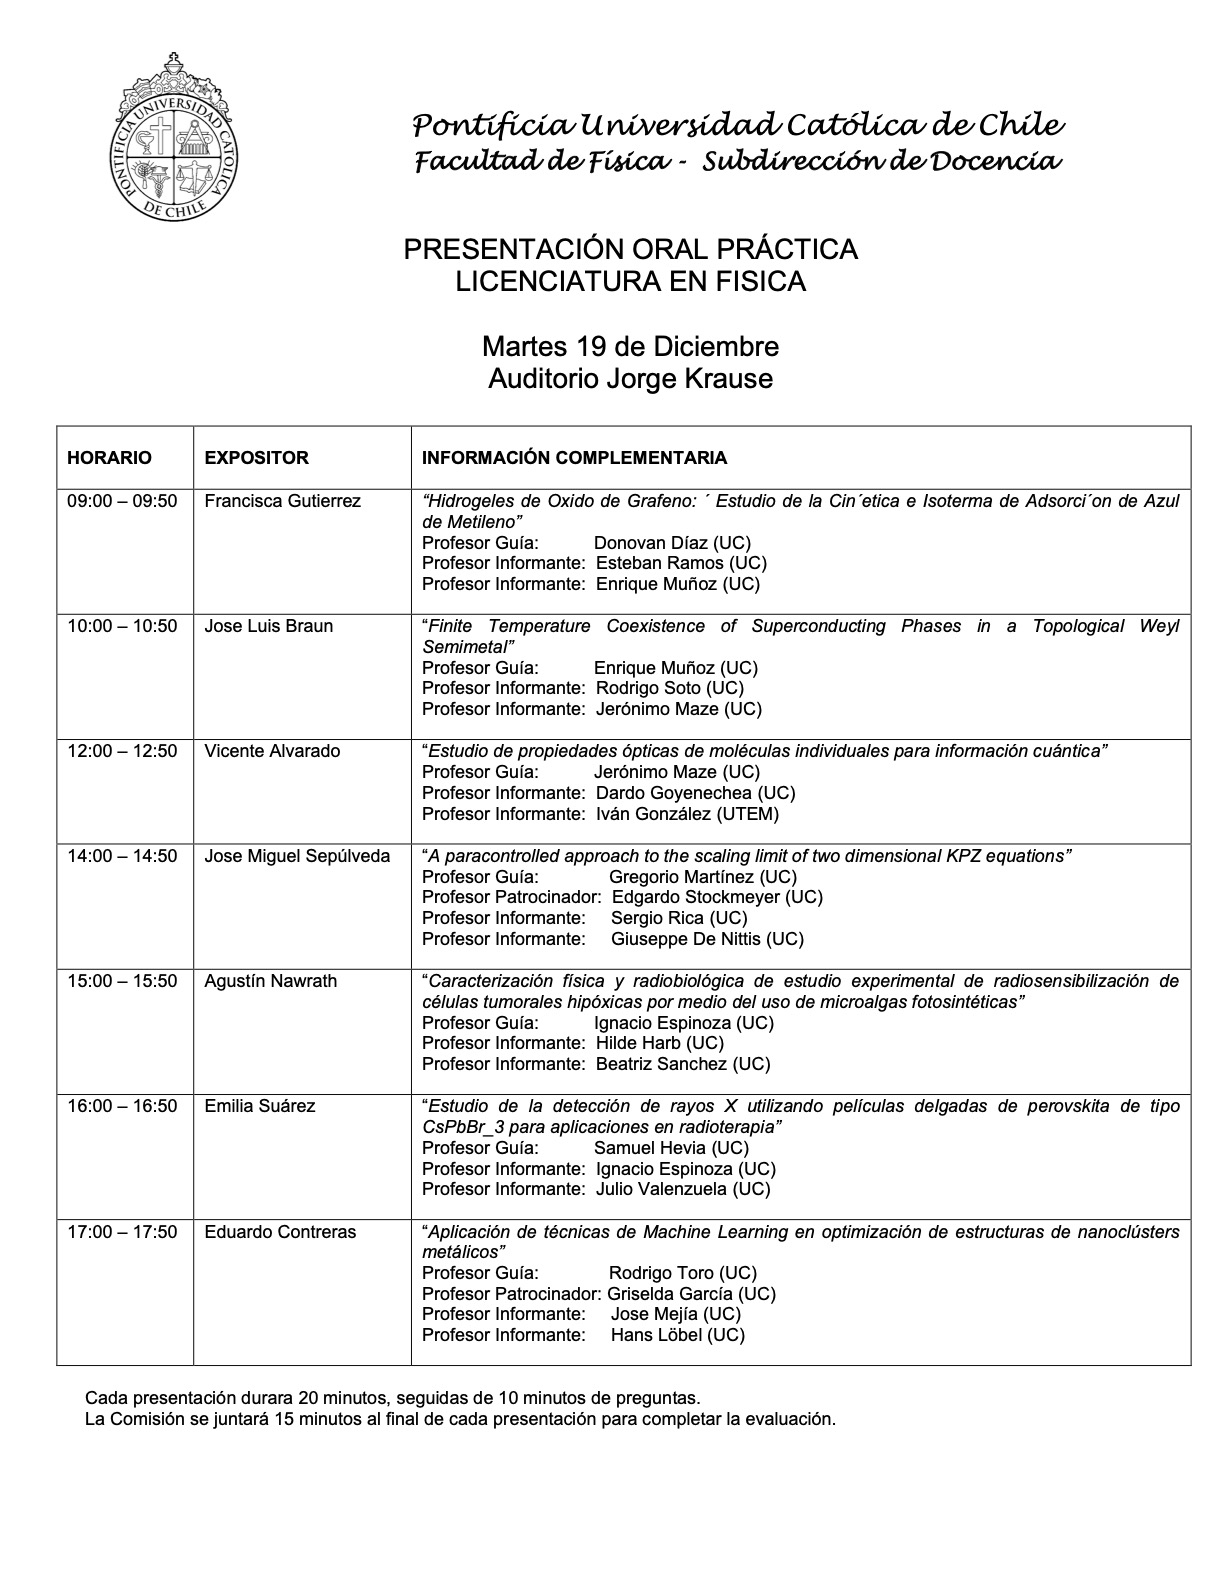 Presentaciones prácticas de Licenciatura en Física (19.12.23) 